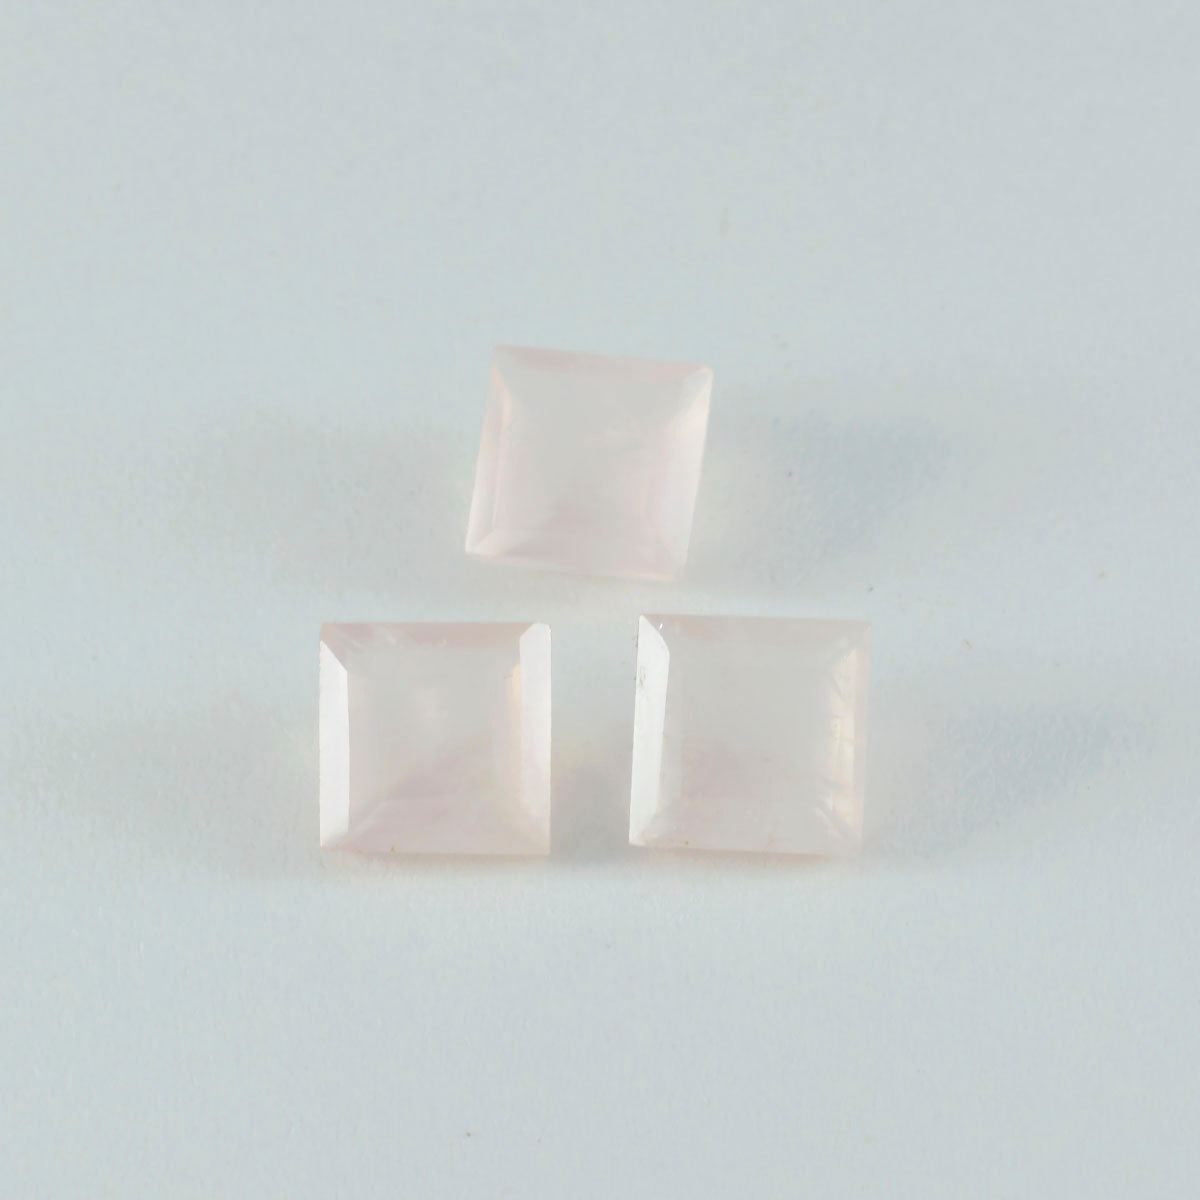 riyogems 1 шт. розовый кварц ограненный 9x9 мм квадратной формы драгоценный камень фантастического качества